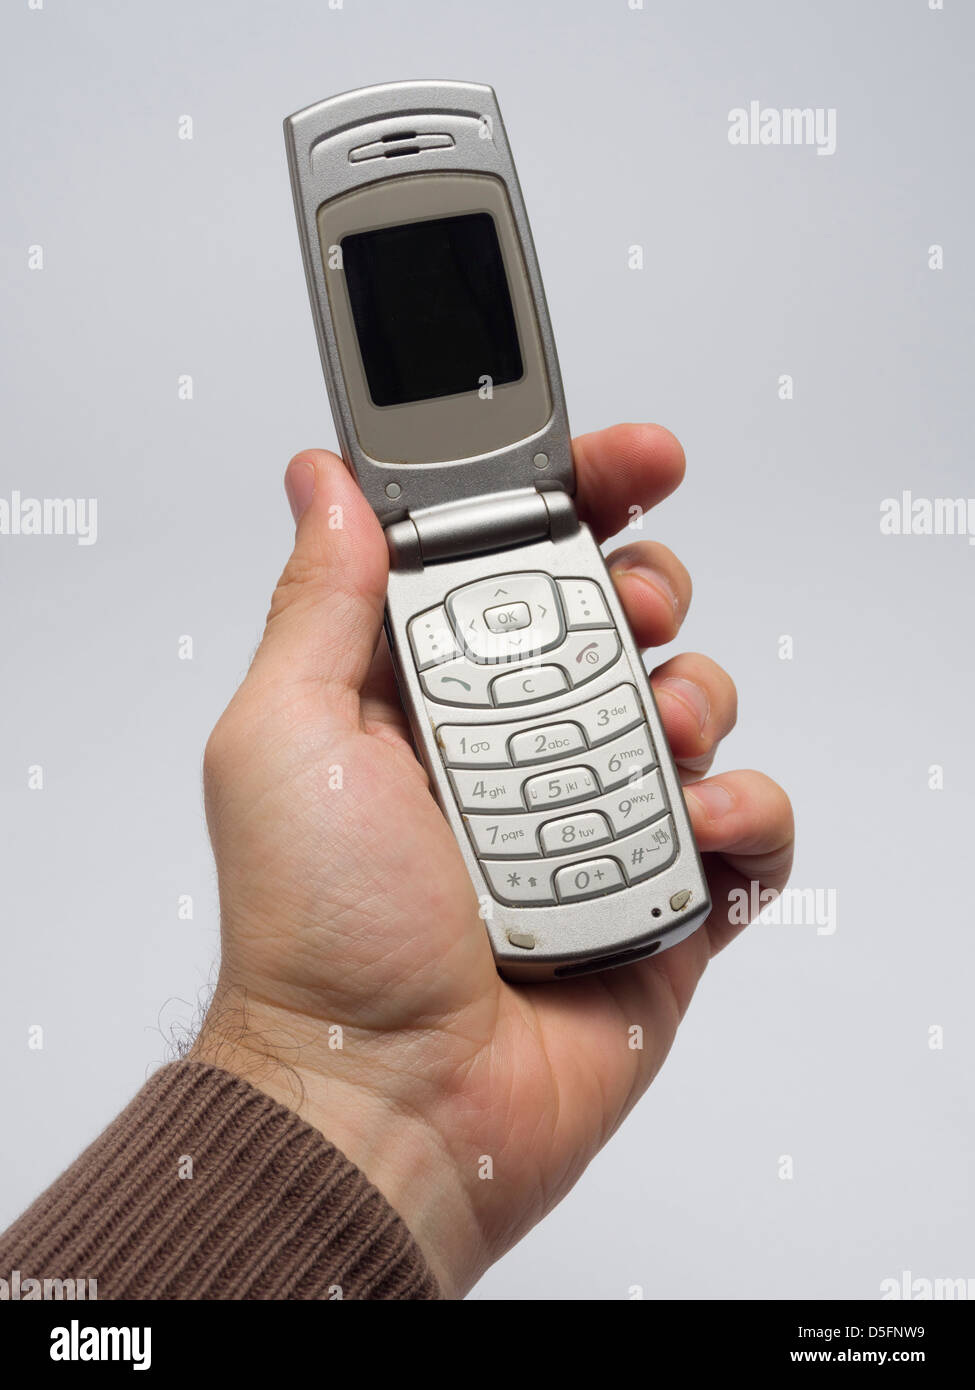 Mano sujetando antiguo teléfono móvil flip Foto de stock